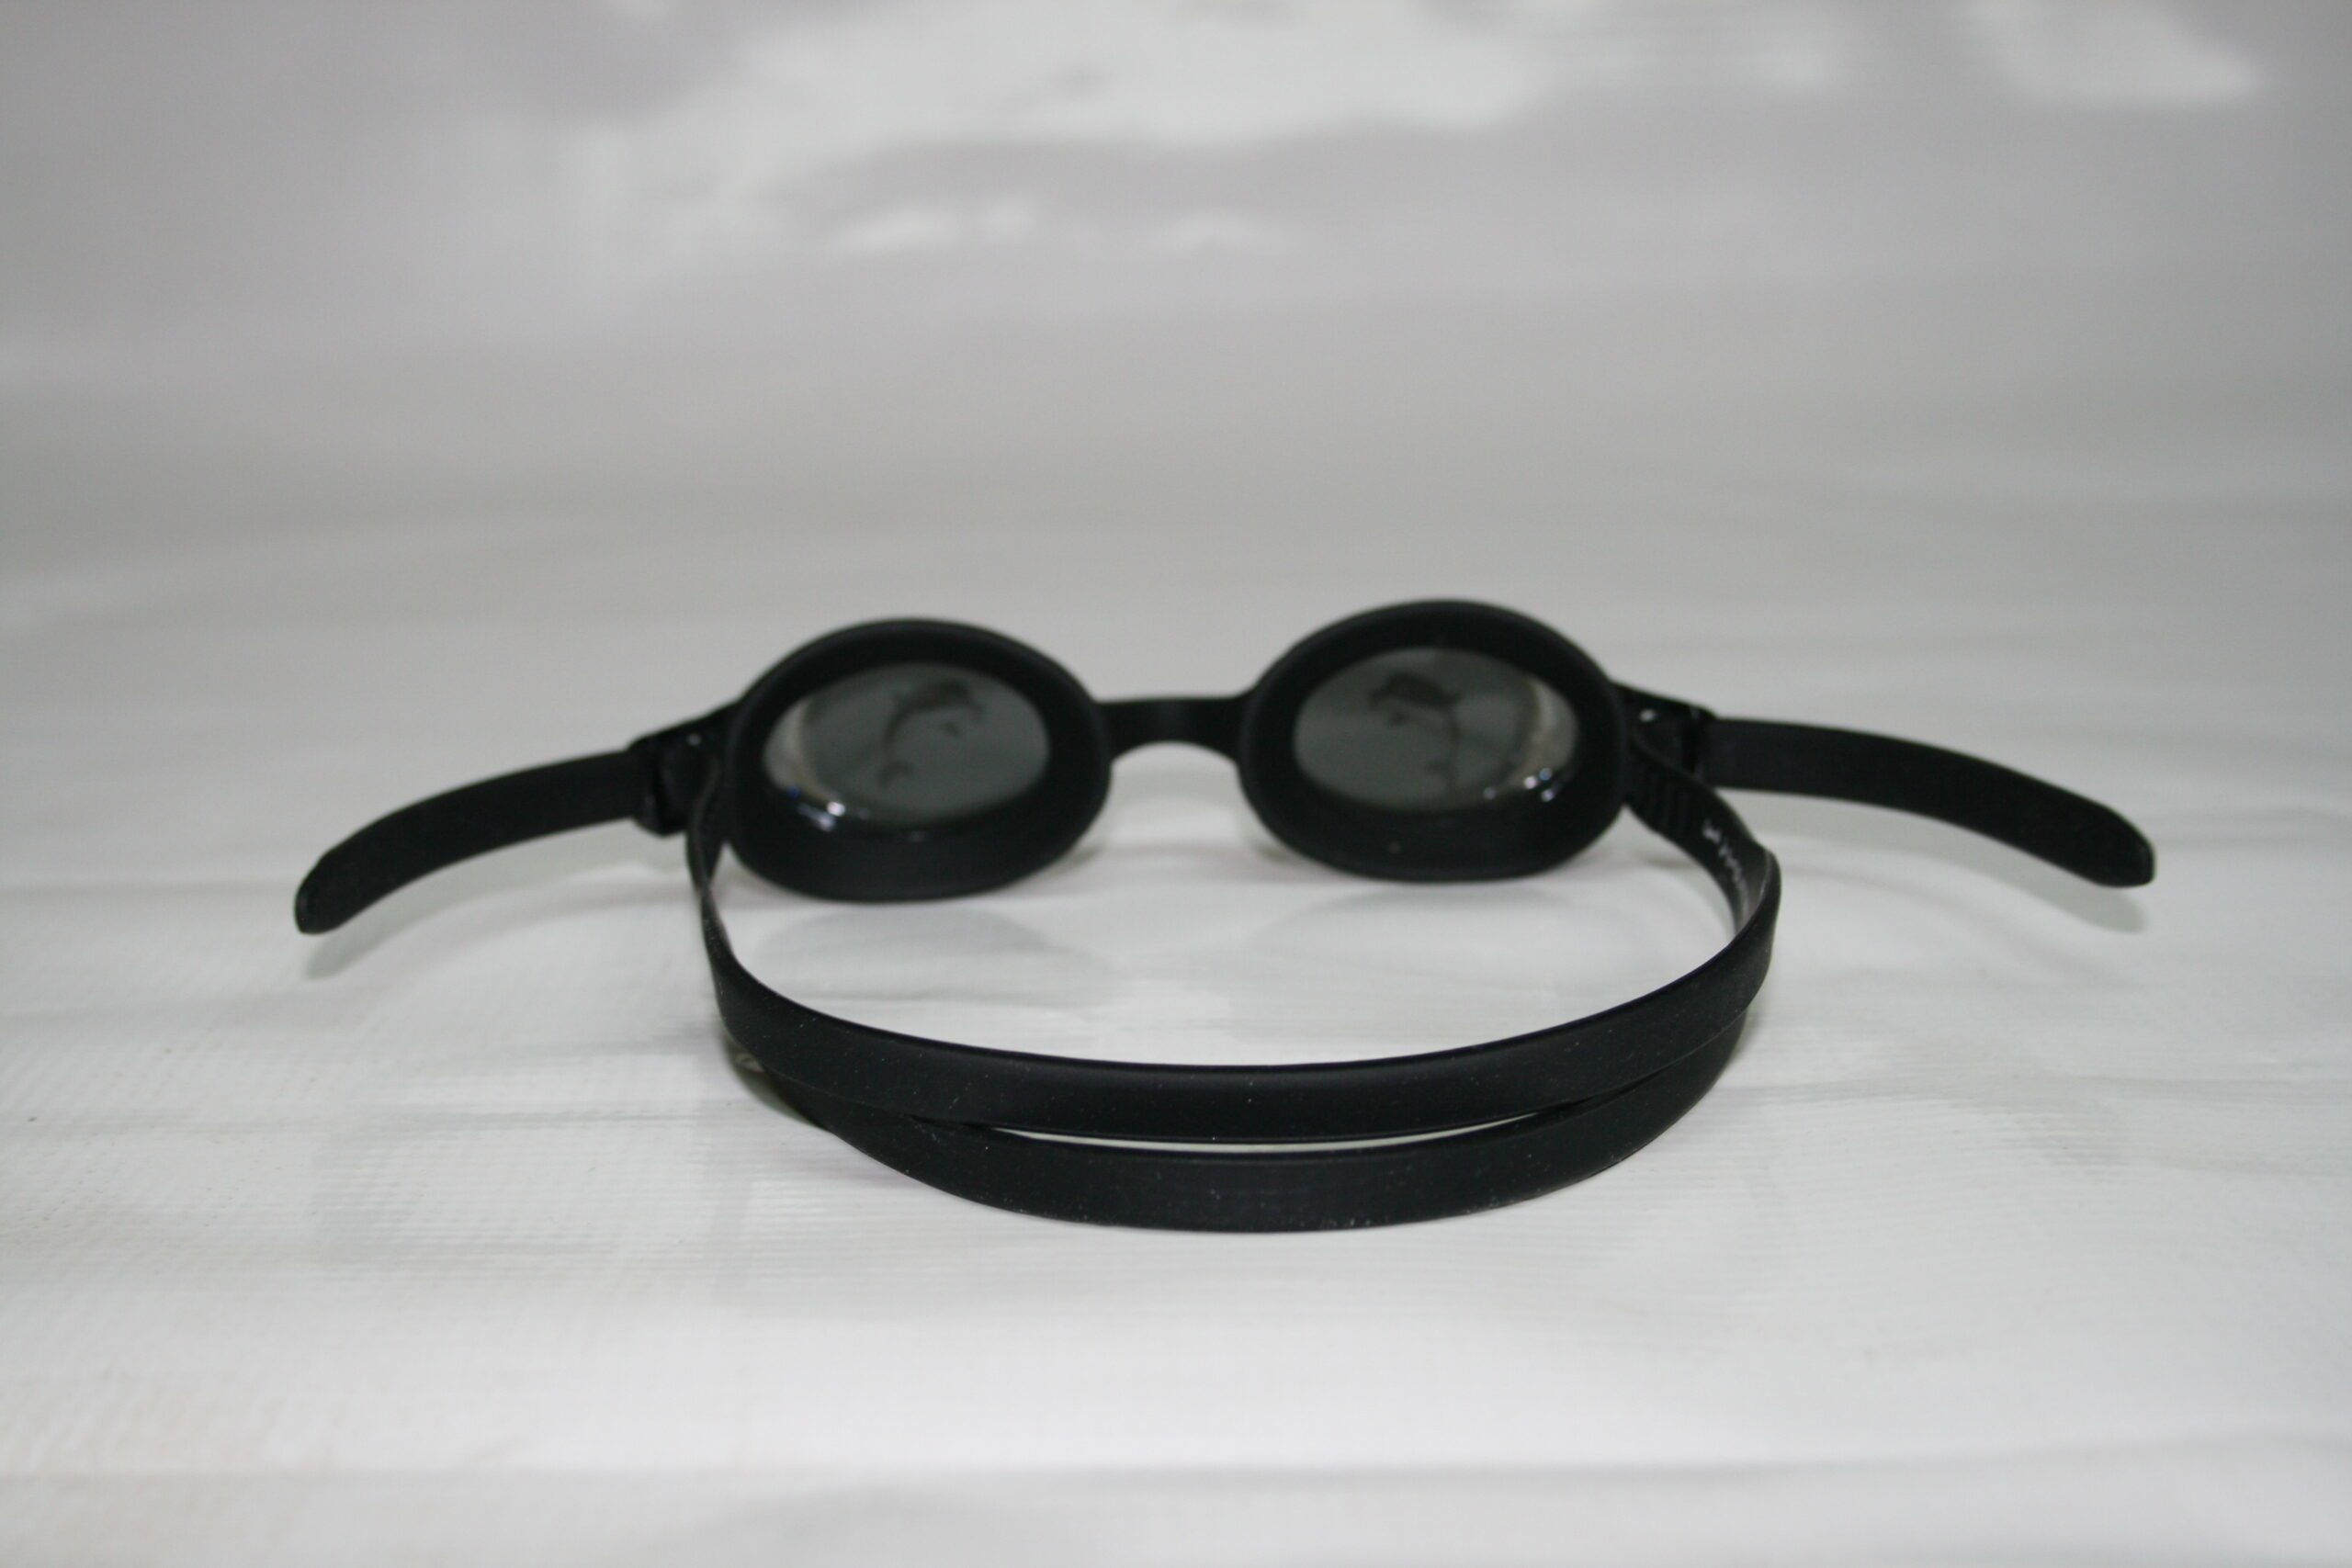 نظارة سباحة 2460 swimming goggles